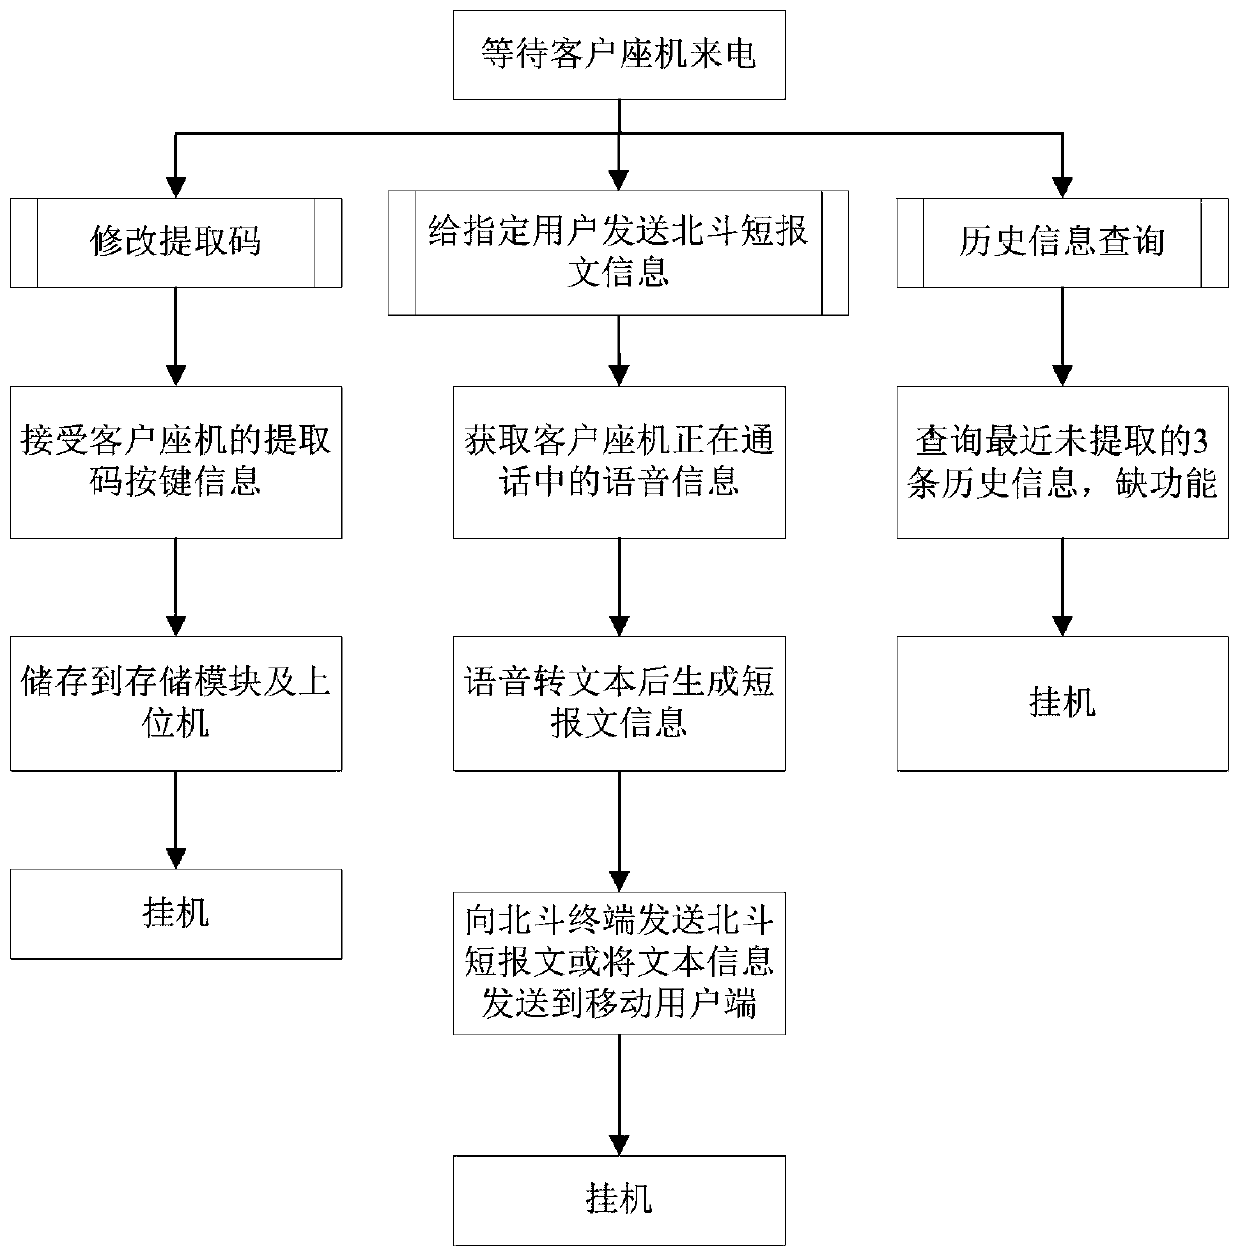 Beidou telephone gateway communication method and system